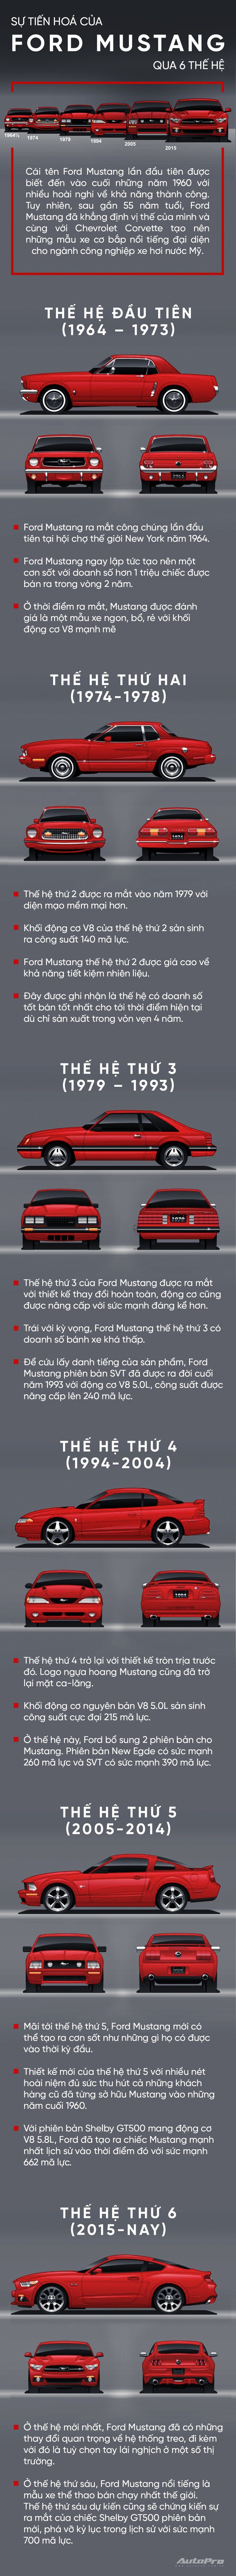 Nhìn lại 6 màn lột xác lịch sử làm nên thương hiệu Ford Mustang - Ảnh 1.